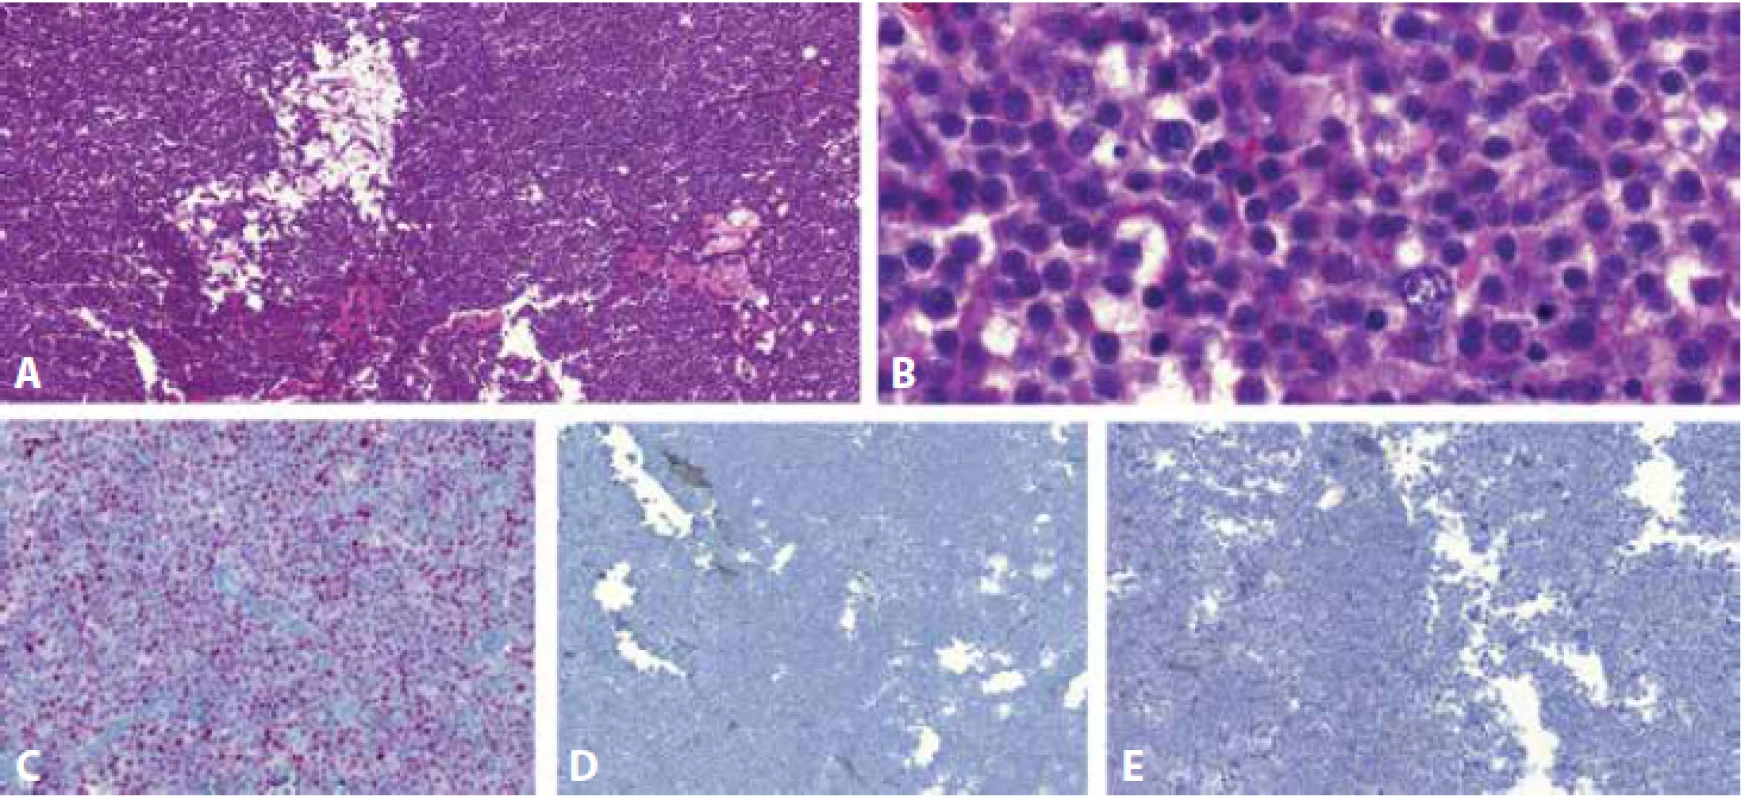 Spermatocytický tumor roste difúzně v edematózním stromatu, charakteristický je takzvaný „potrhaný“ vzhled, viditelný v malém zvětšení (A). Při větším zvětšení jsou patrné pravidelné buňky třech velikostí: 1) nejmenší, připomínající lymfocyty, 2) prostřední, nejpočetnější, velikostně odpovídající buňkám seminomu a 3) největší, často mnohojaderné, dosahující až 100 mikrometrů v průměru (B). Imunohistochemicky jsou nádorové buňky nukleárně pozitivní v průkazu DMRT1 (C) a negativní v reakci s NANOG (D) a OCT3/4 (E).